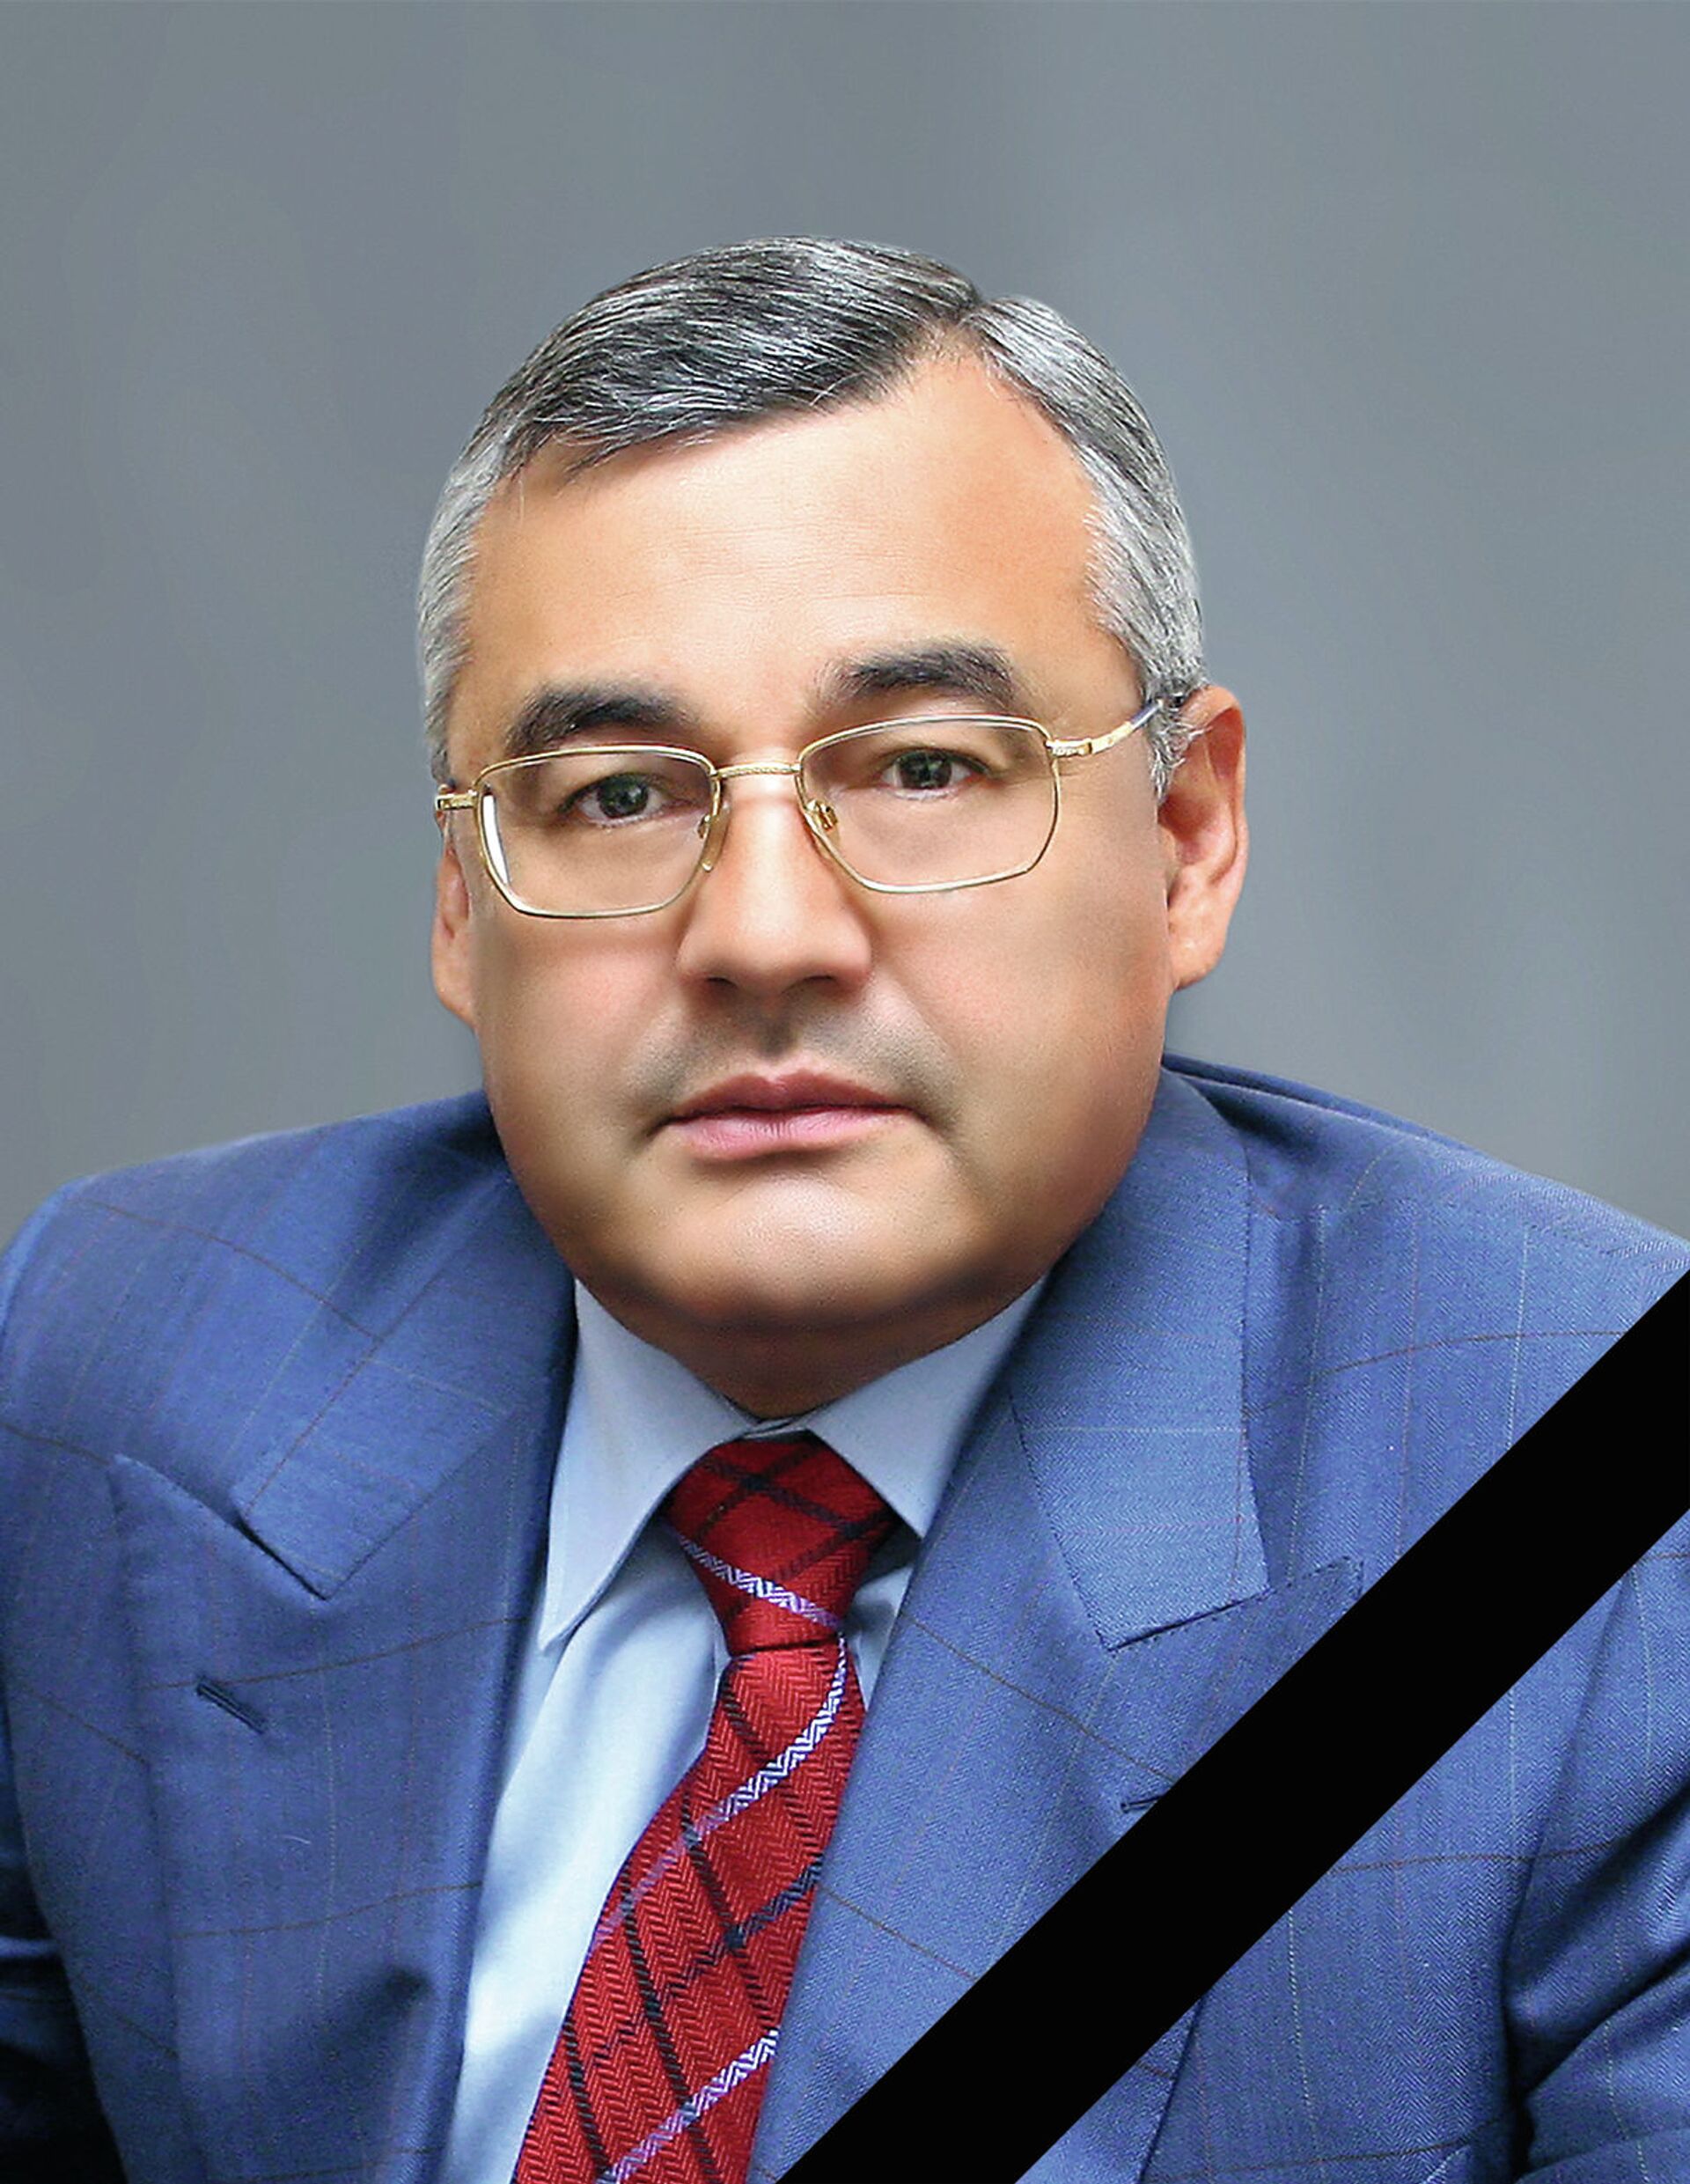 Умер бизнесмен из топ-5 списка Forbes Казахстана Алиджан Ибрагимов - Sputnik Казахстан, 1920, 03.02.2021